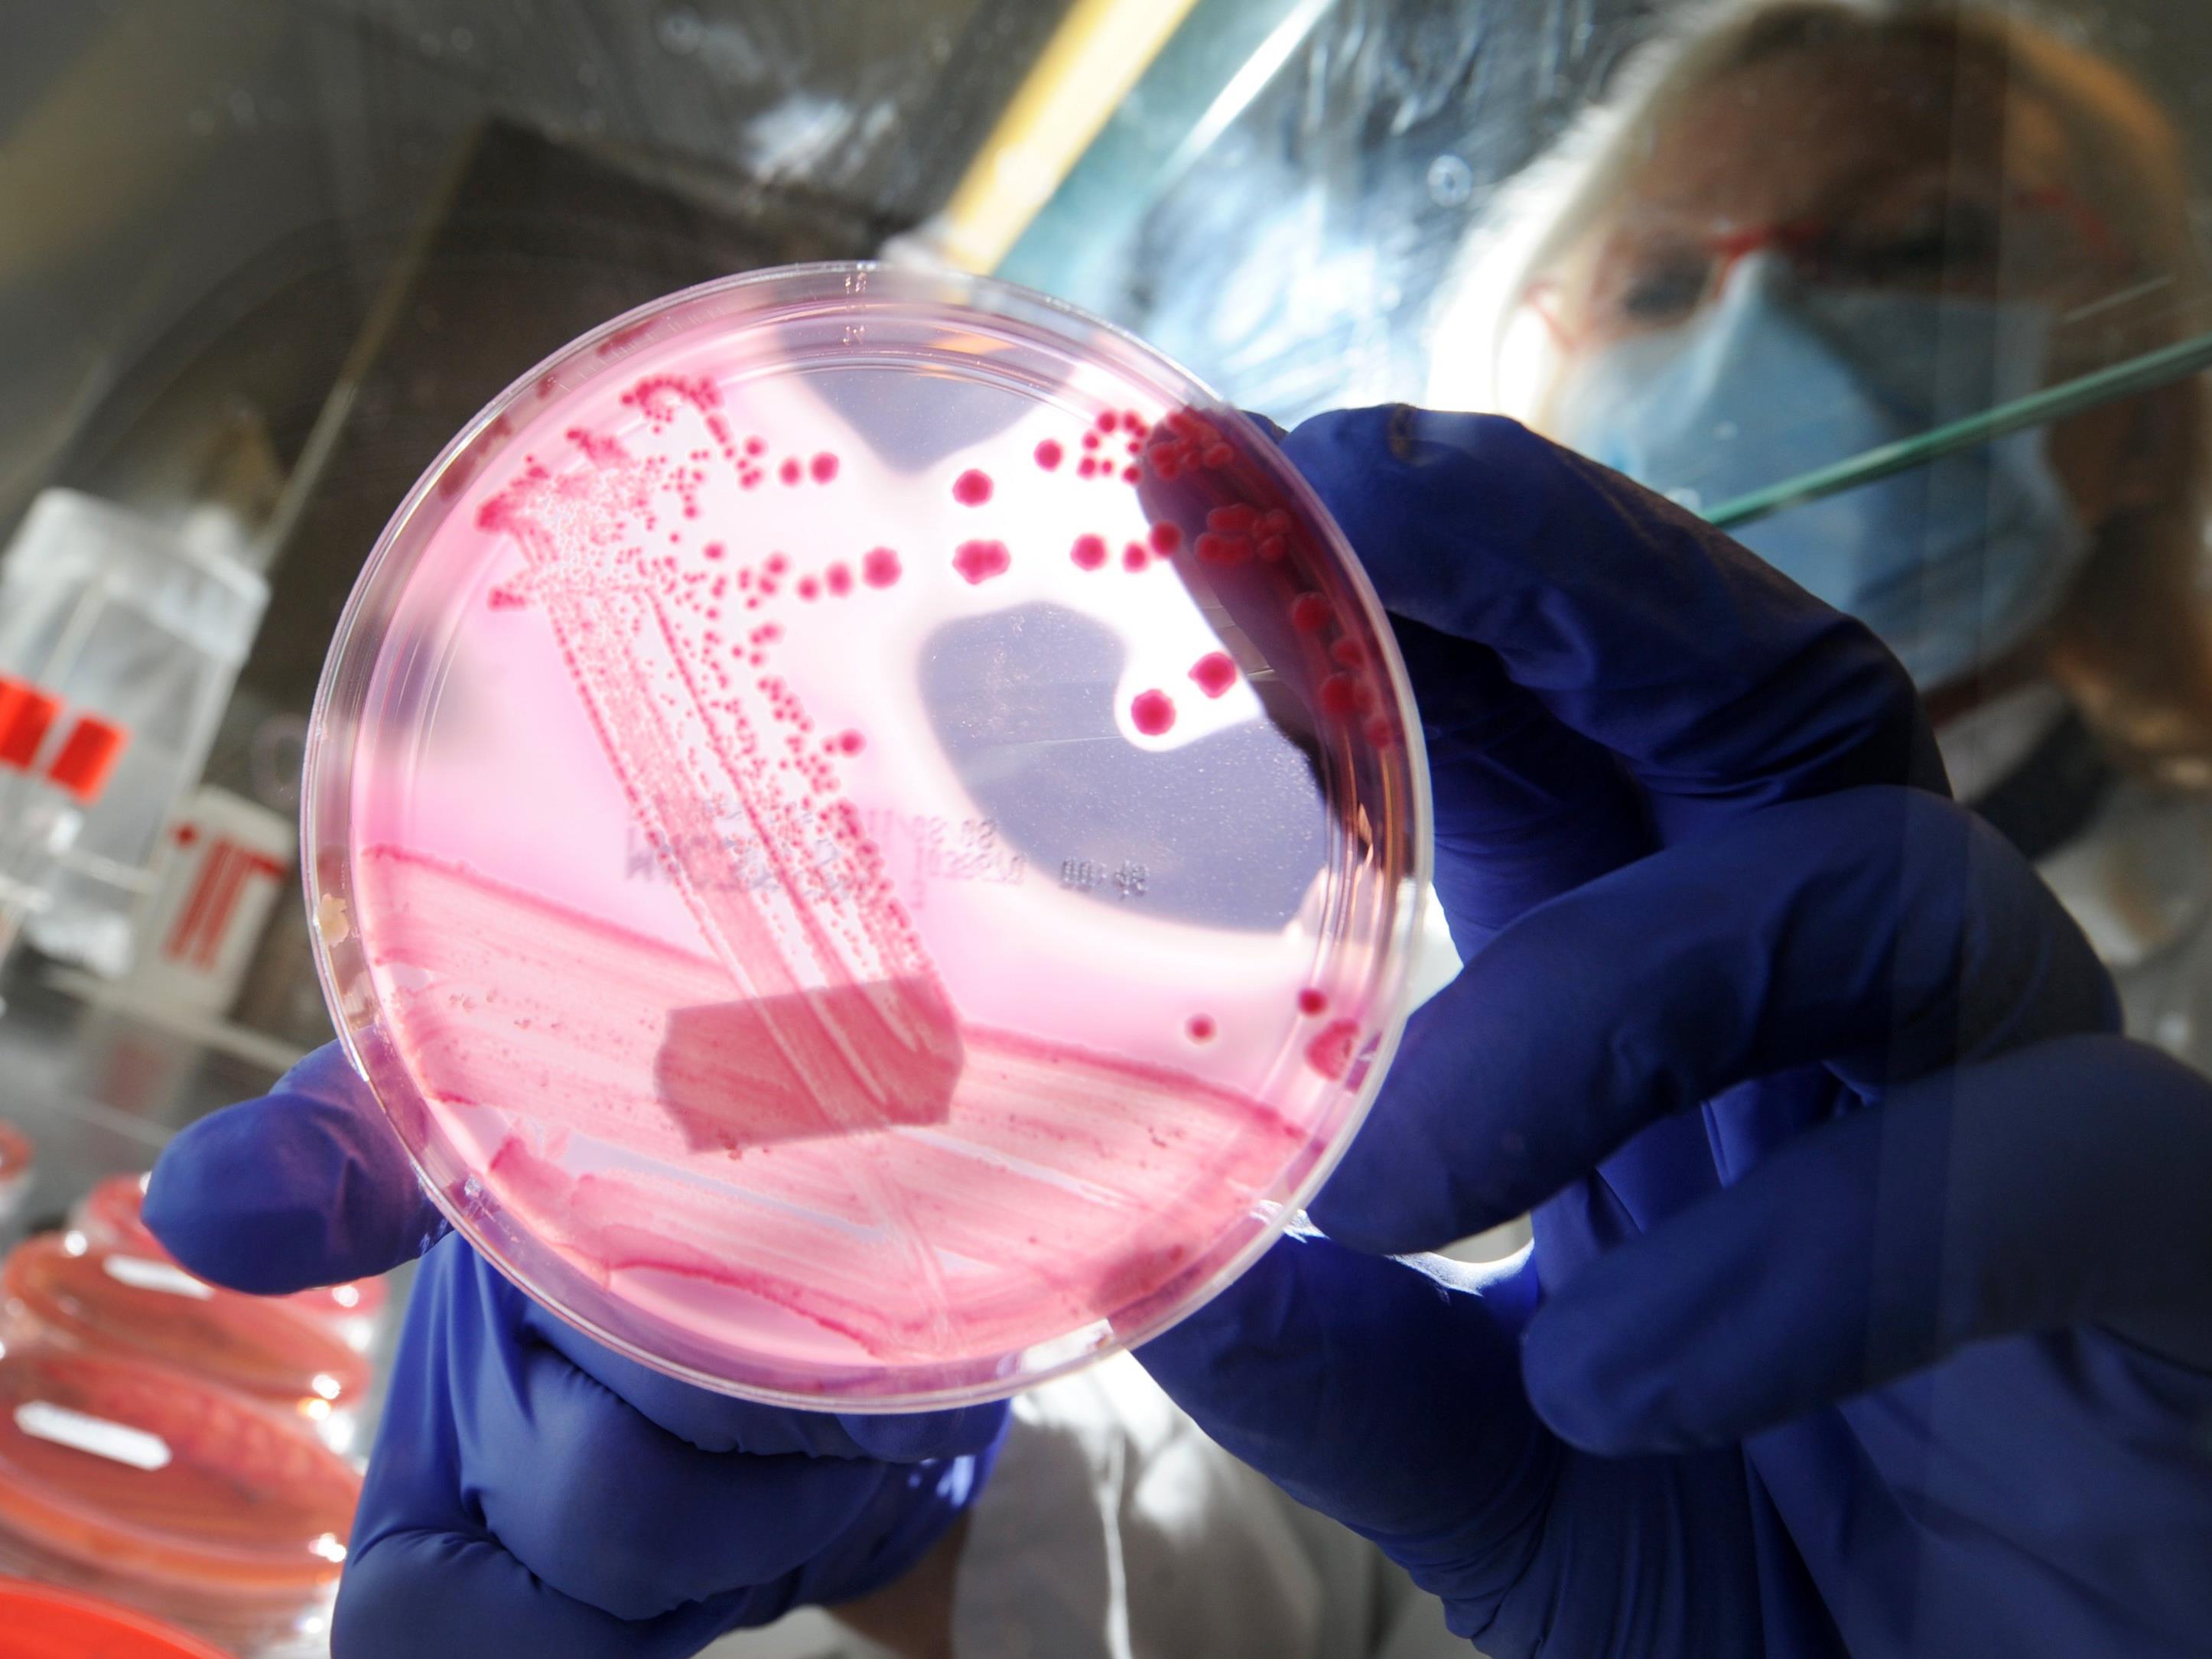 Bakterium mit dem Mcr-1-Gen gegen jedes Antibiotikum resistent.